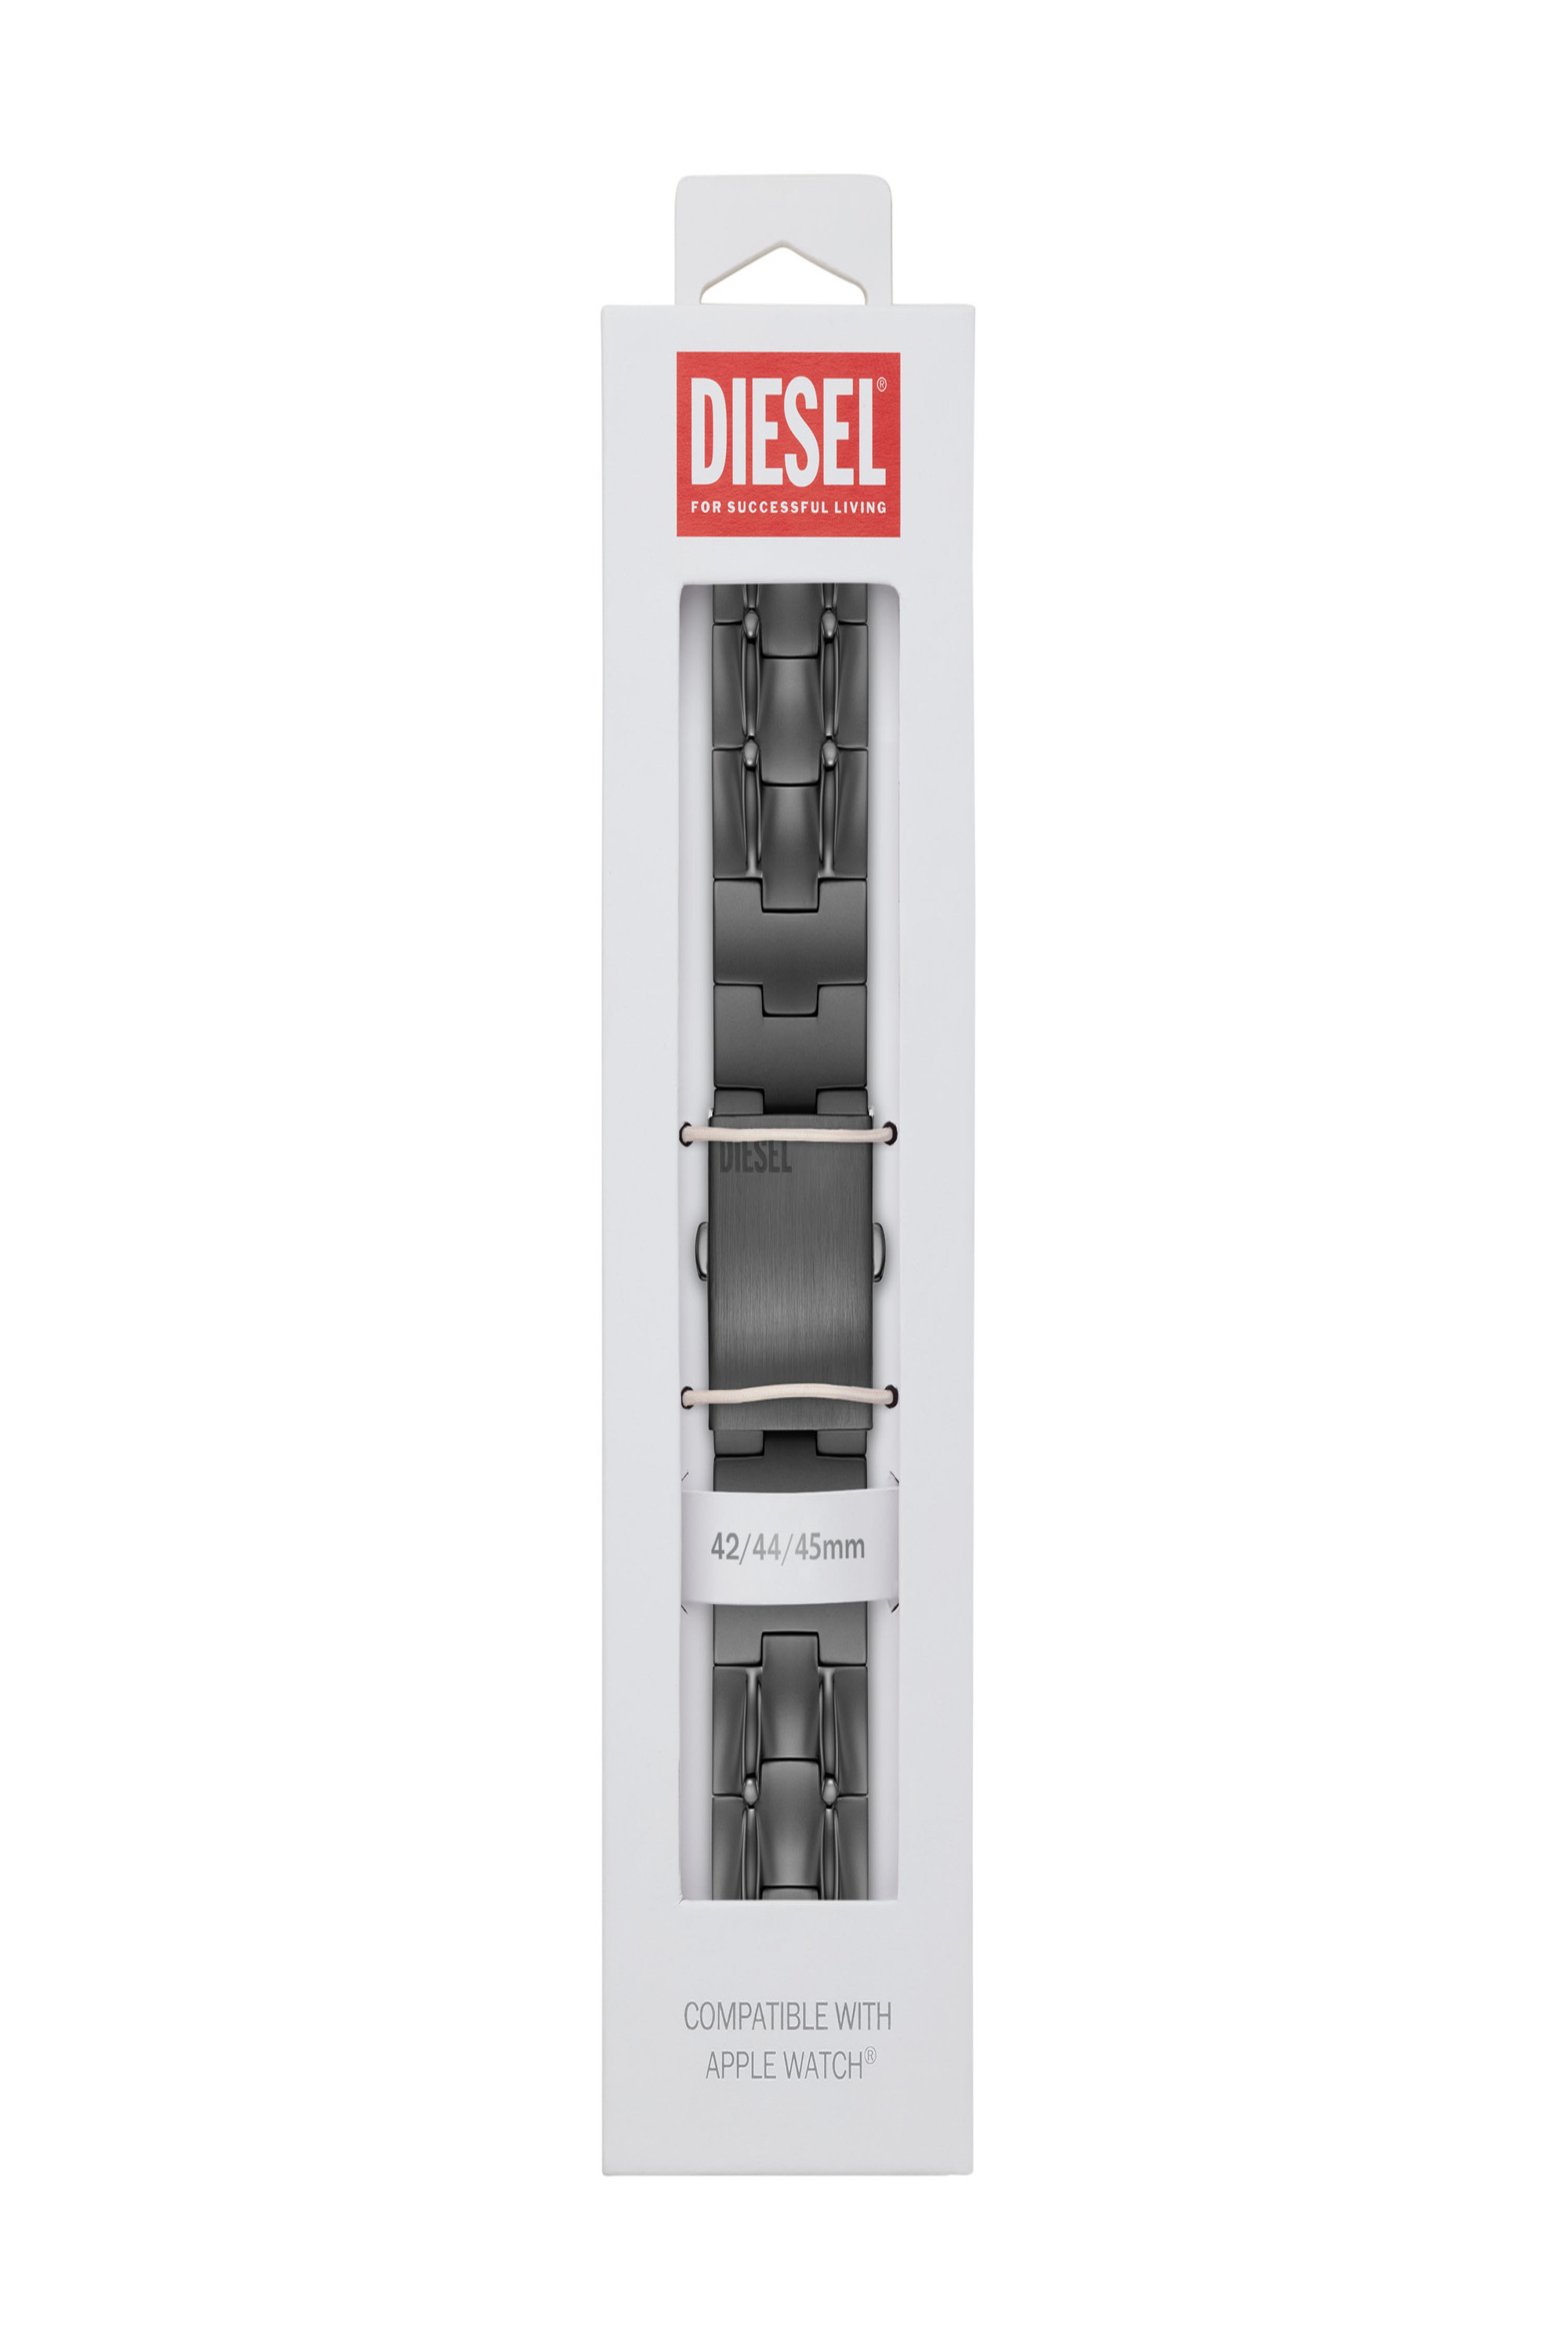 Diesel - DSS0015, Grey - Image 2